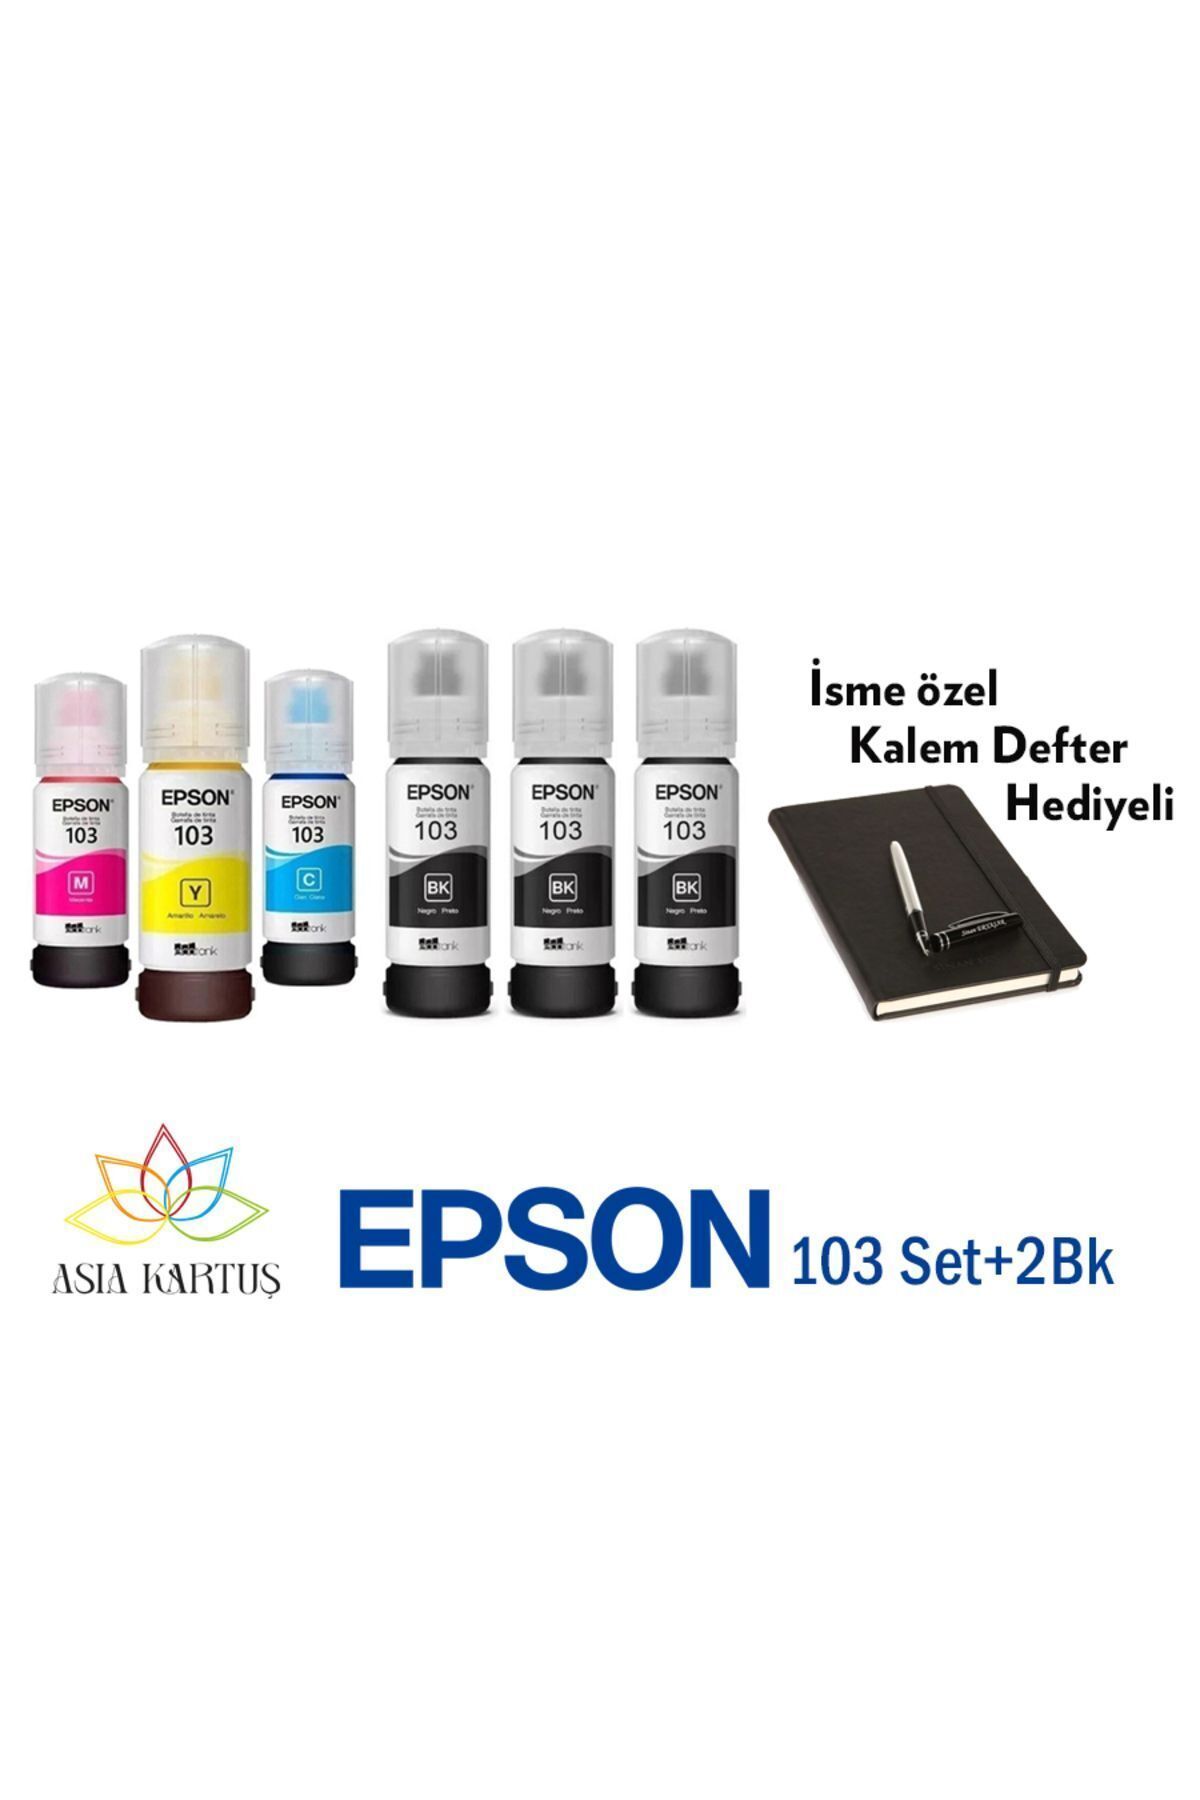 Epson Mürekkep 103 6 Renk +2BK Set, Epson EcoTank L5290 Uyumlu Defter Hediyeli Mürekkep Seti